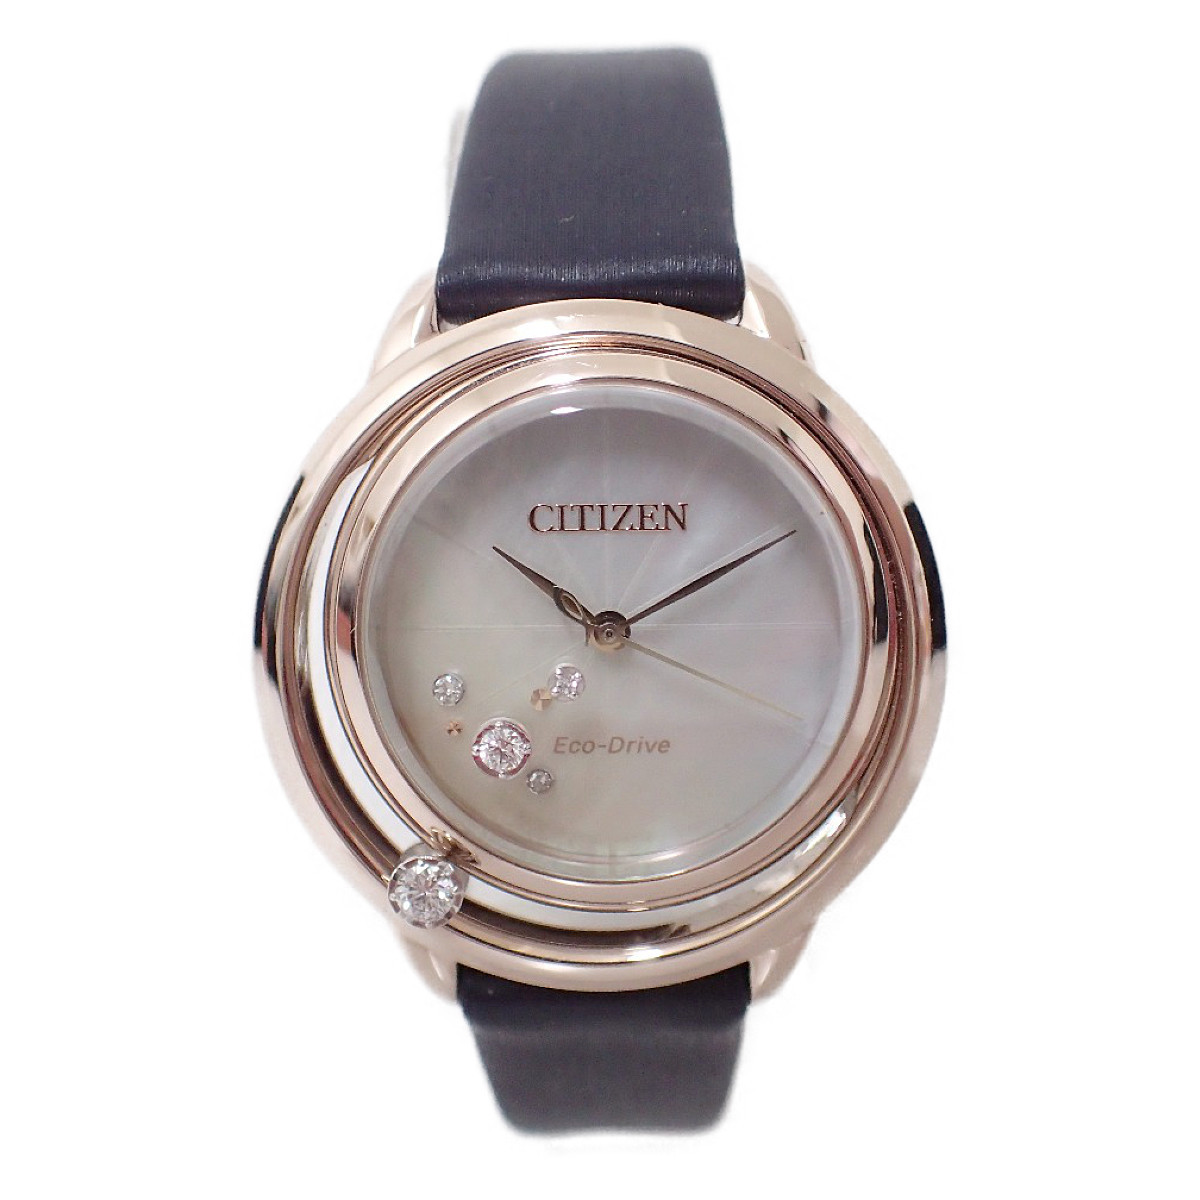 シチズンのEW522-20D L エコドライブ ホワイトシェル×ダークネイビー レザーベルト 腕時計の買取実績です。